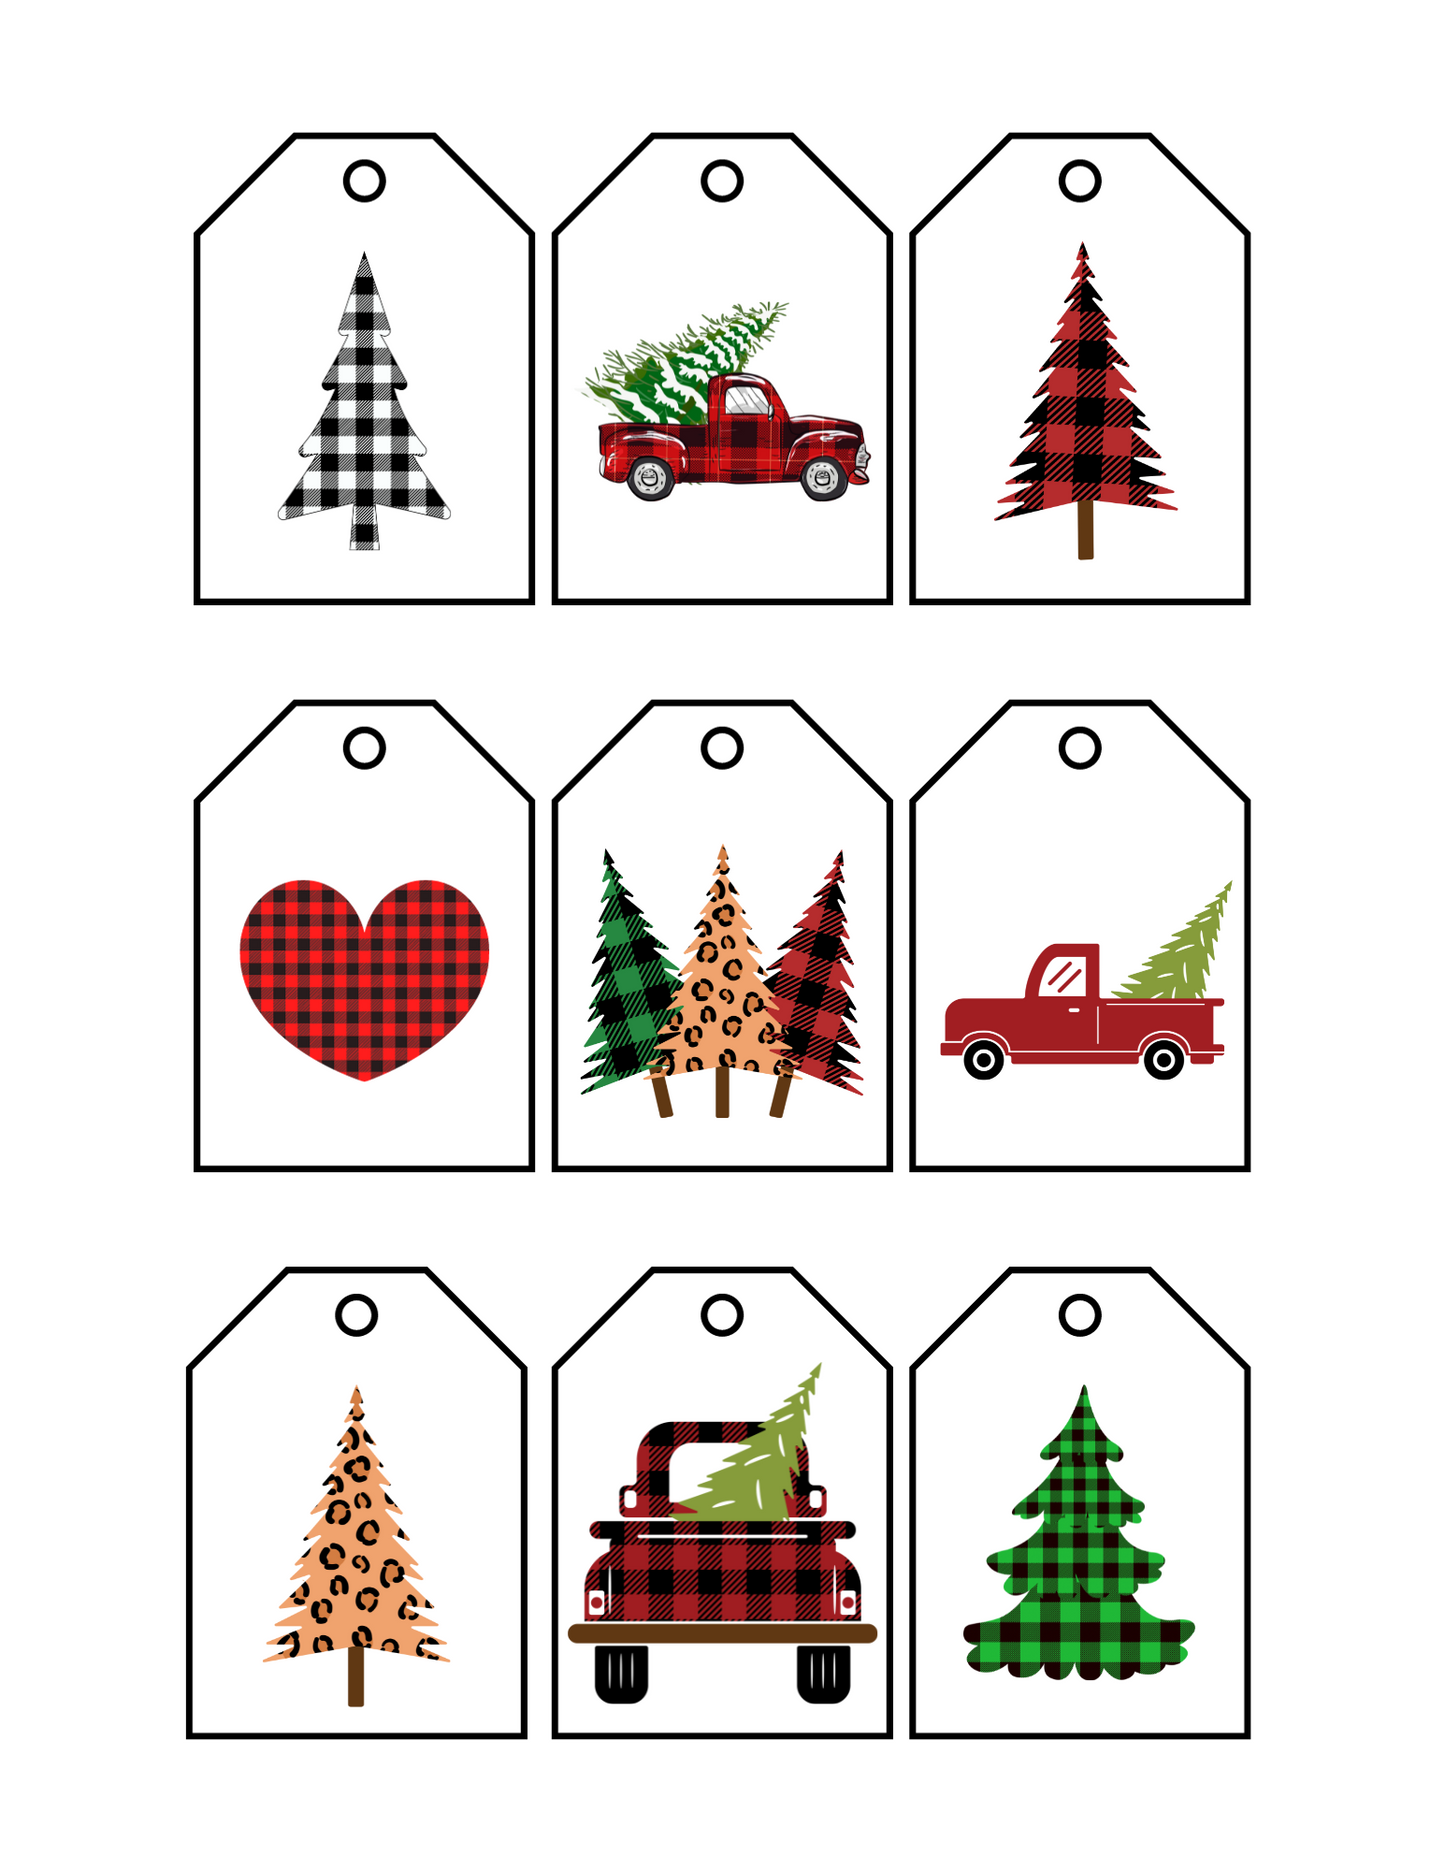 Buffalo Check Holiday Gift Tags - Printable Digital Download ~ Sharon Dawn Collection